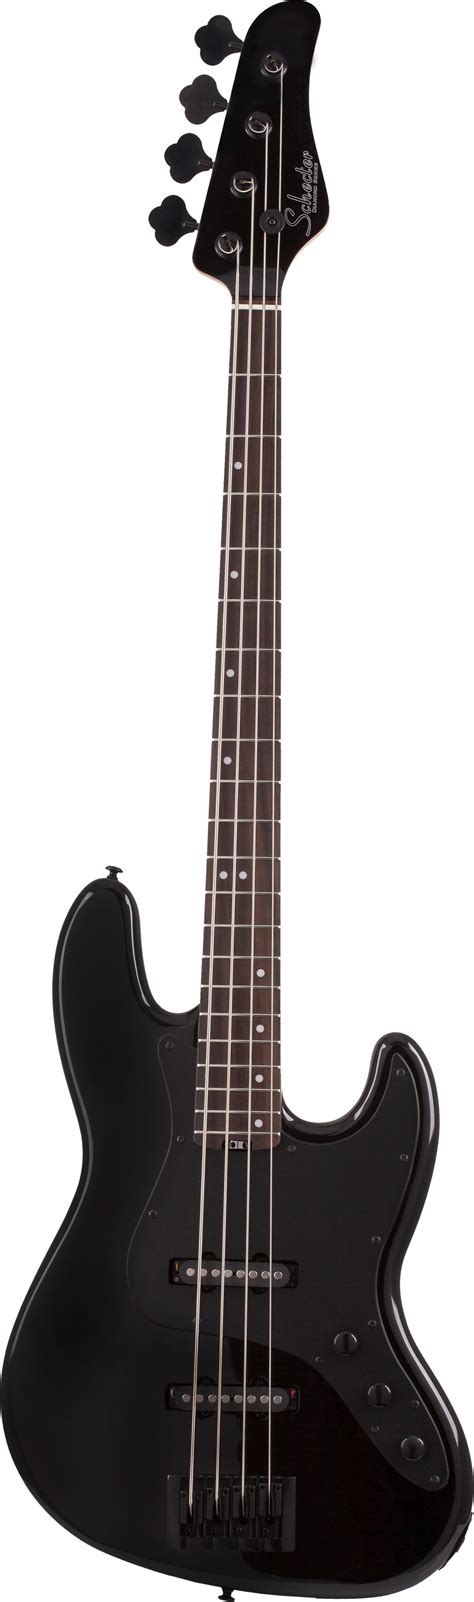 Schecter J4 Electric Bass